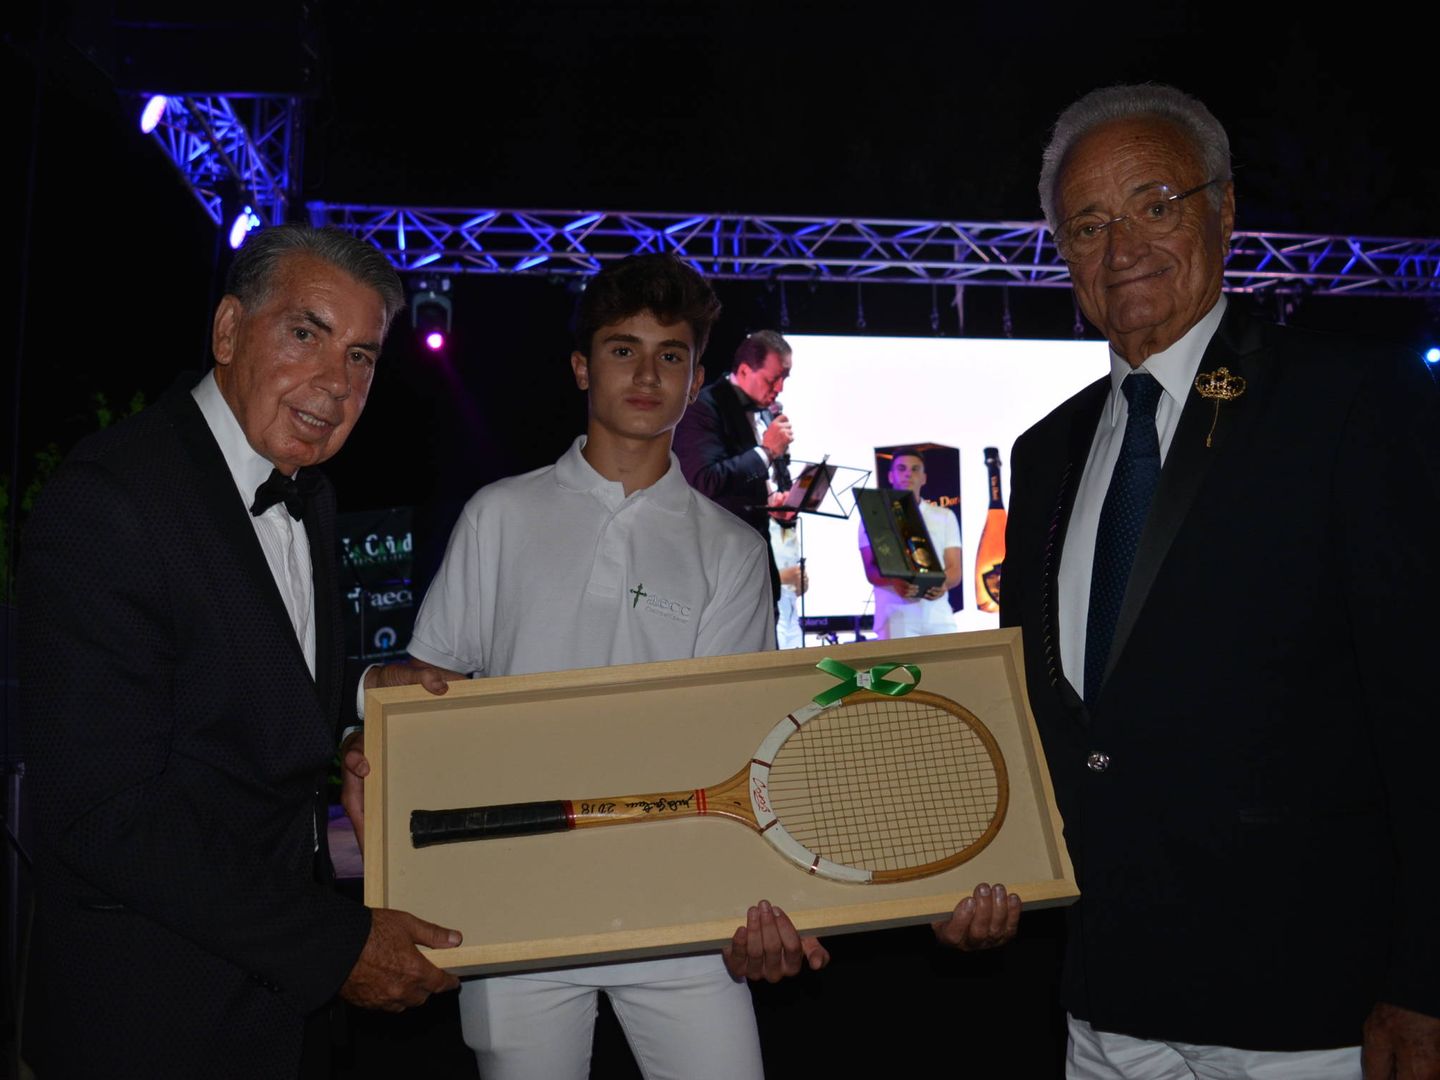 Manolo Santana con la raqueta que sorteó, junto al empresario que adquirió la pieza: José María Ferri, presidente de Visionlab. (Foto: AECC)